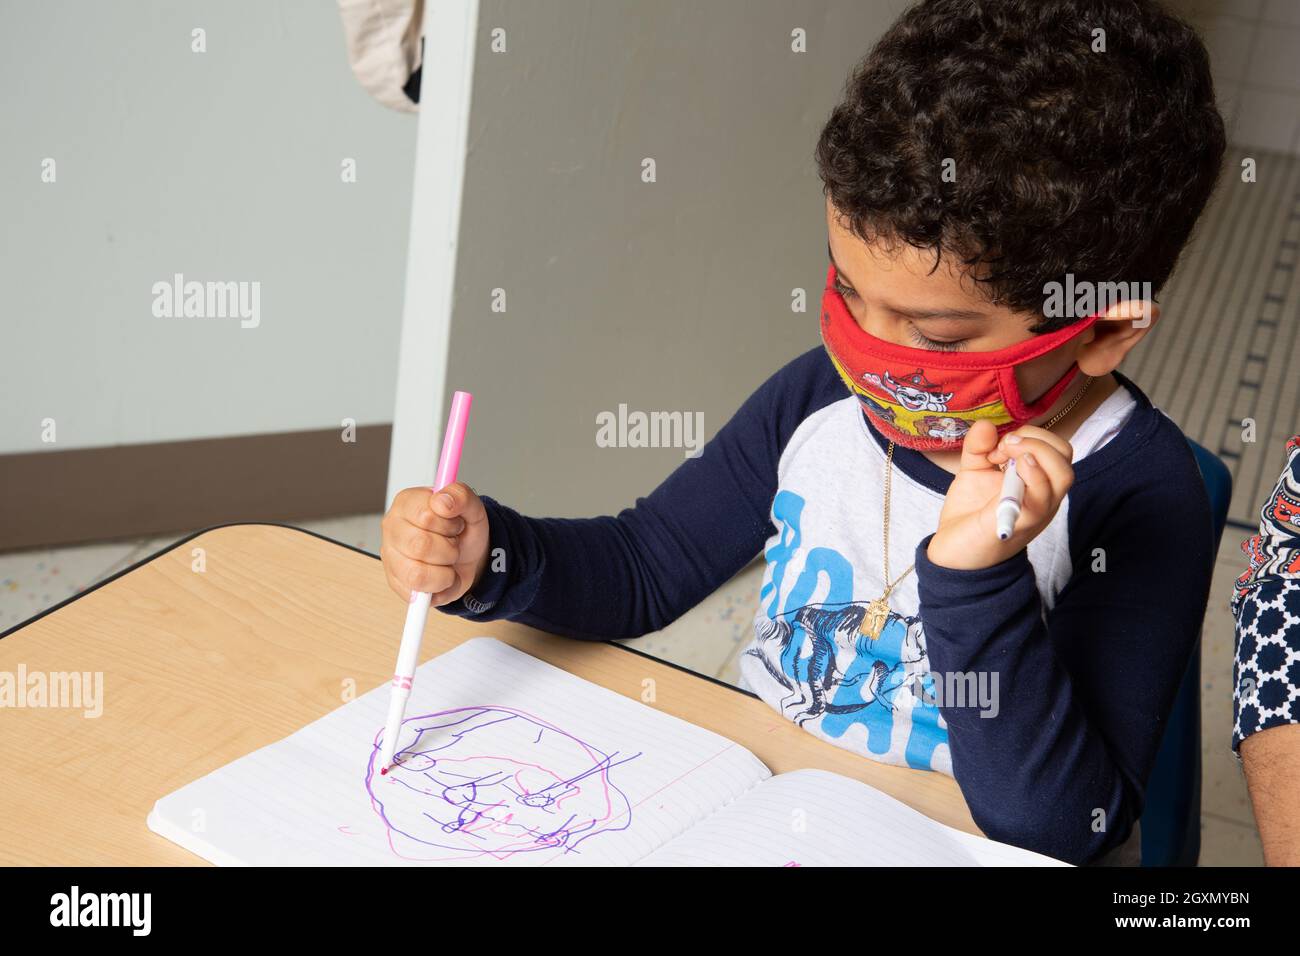 Educación Preescolar Niños de 4-5 años sentados y dibujando con un marcador sostenido en el puño, usando una máscara facial para proteger contra la infección por Covid-19 Foto de stock